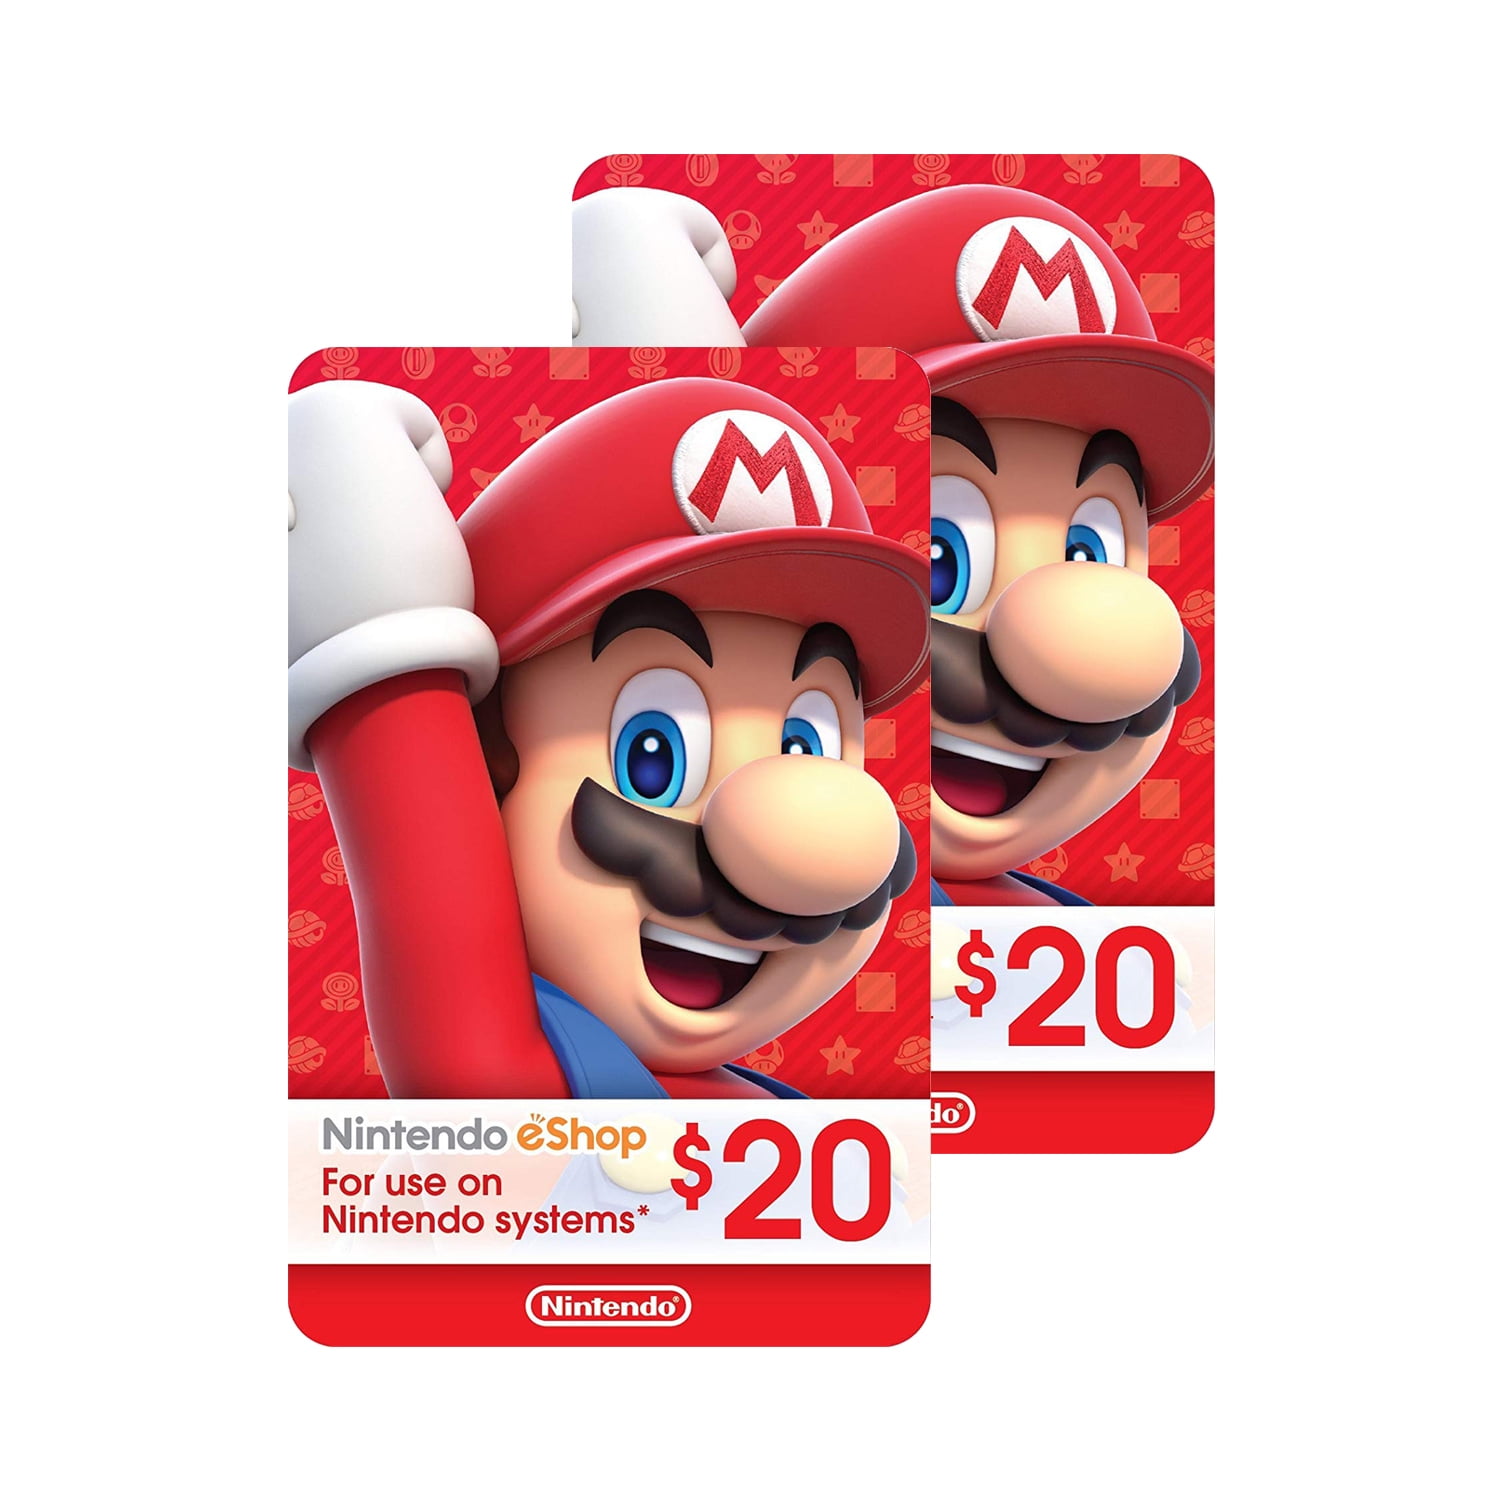 Mor spørgeskema lighed Nintendo eShop $40.00 Physical Gift Cards (2 pack of $20.00 Cards) -  Walmart.com